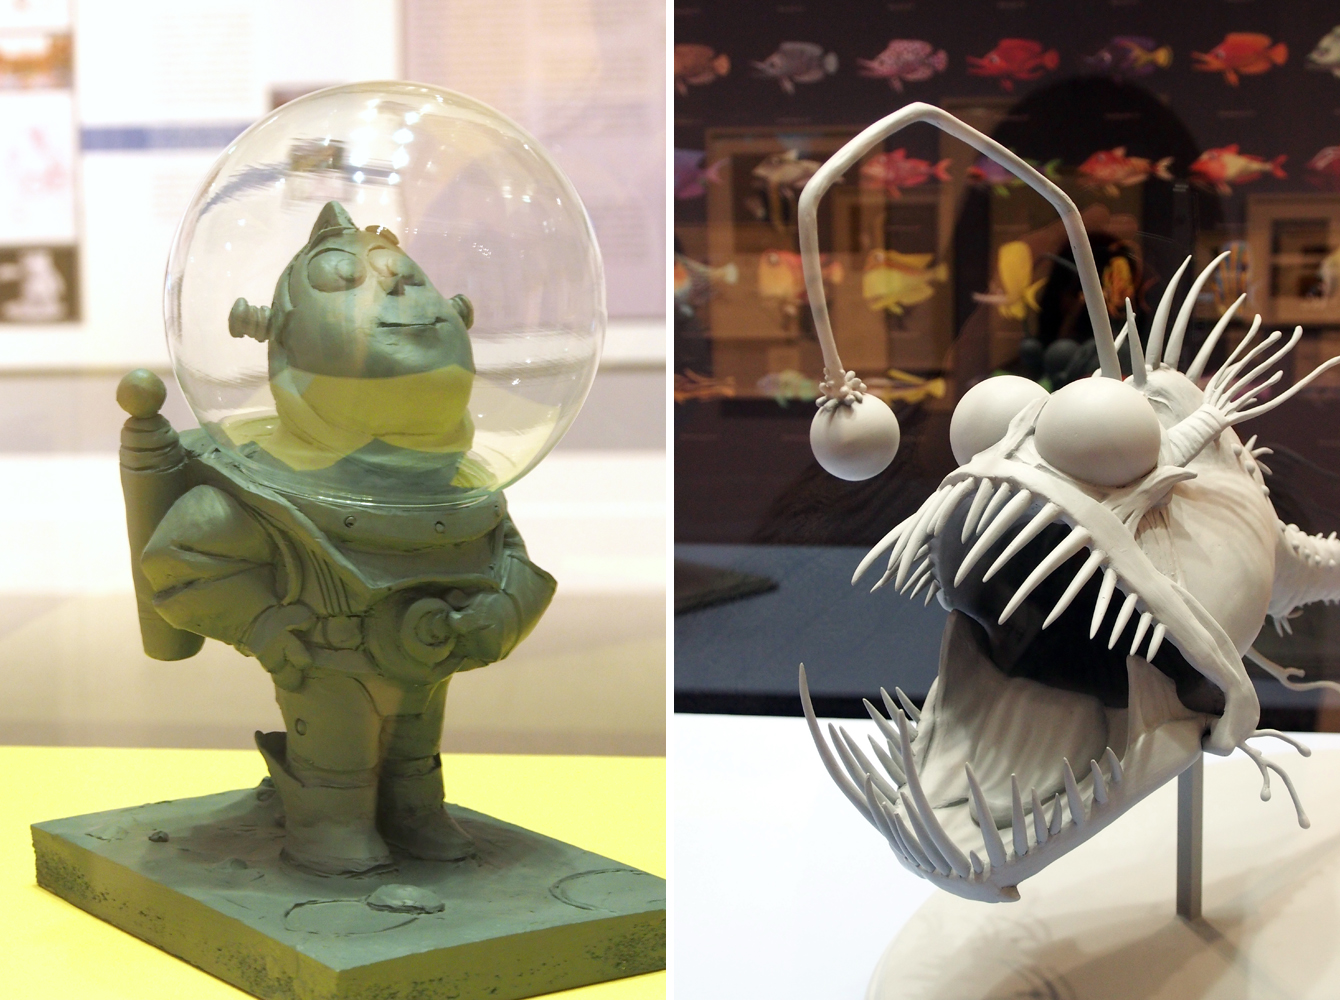 Ausstellung "Pixar - 25 Years of Animation" - Plastiken - Rechte für die abgebildeten Figuren und Kunstwerke liegen bei Pixar, Bildrechte bei "Fee ist mein Name"